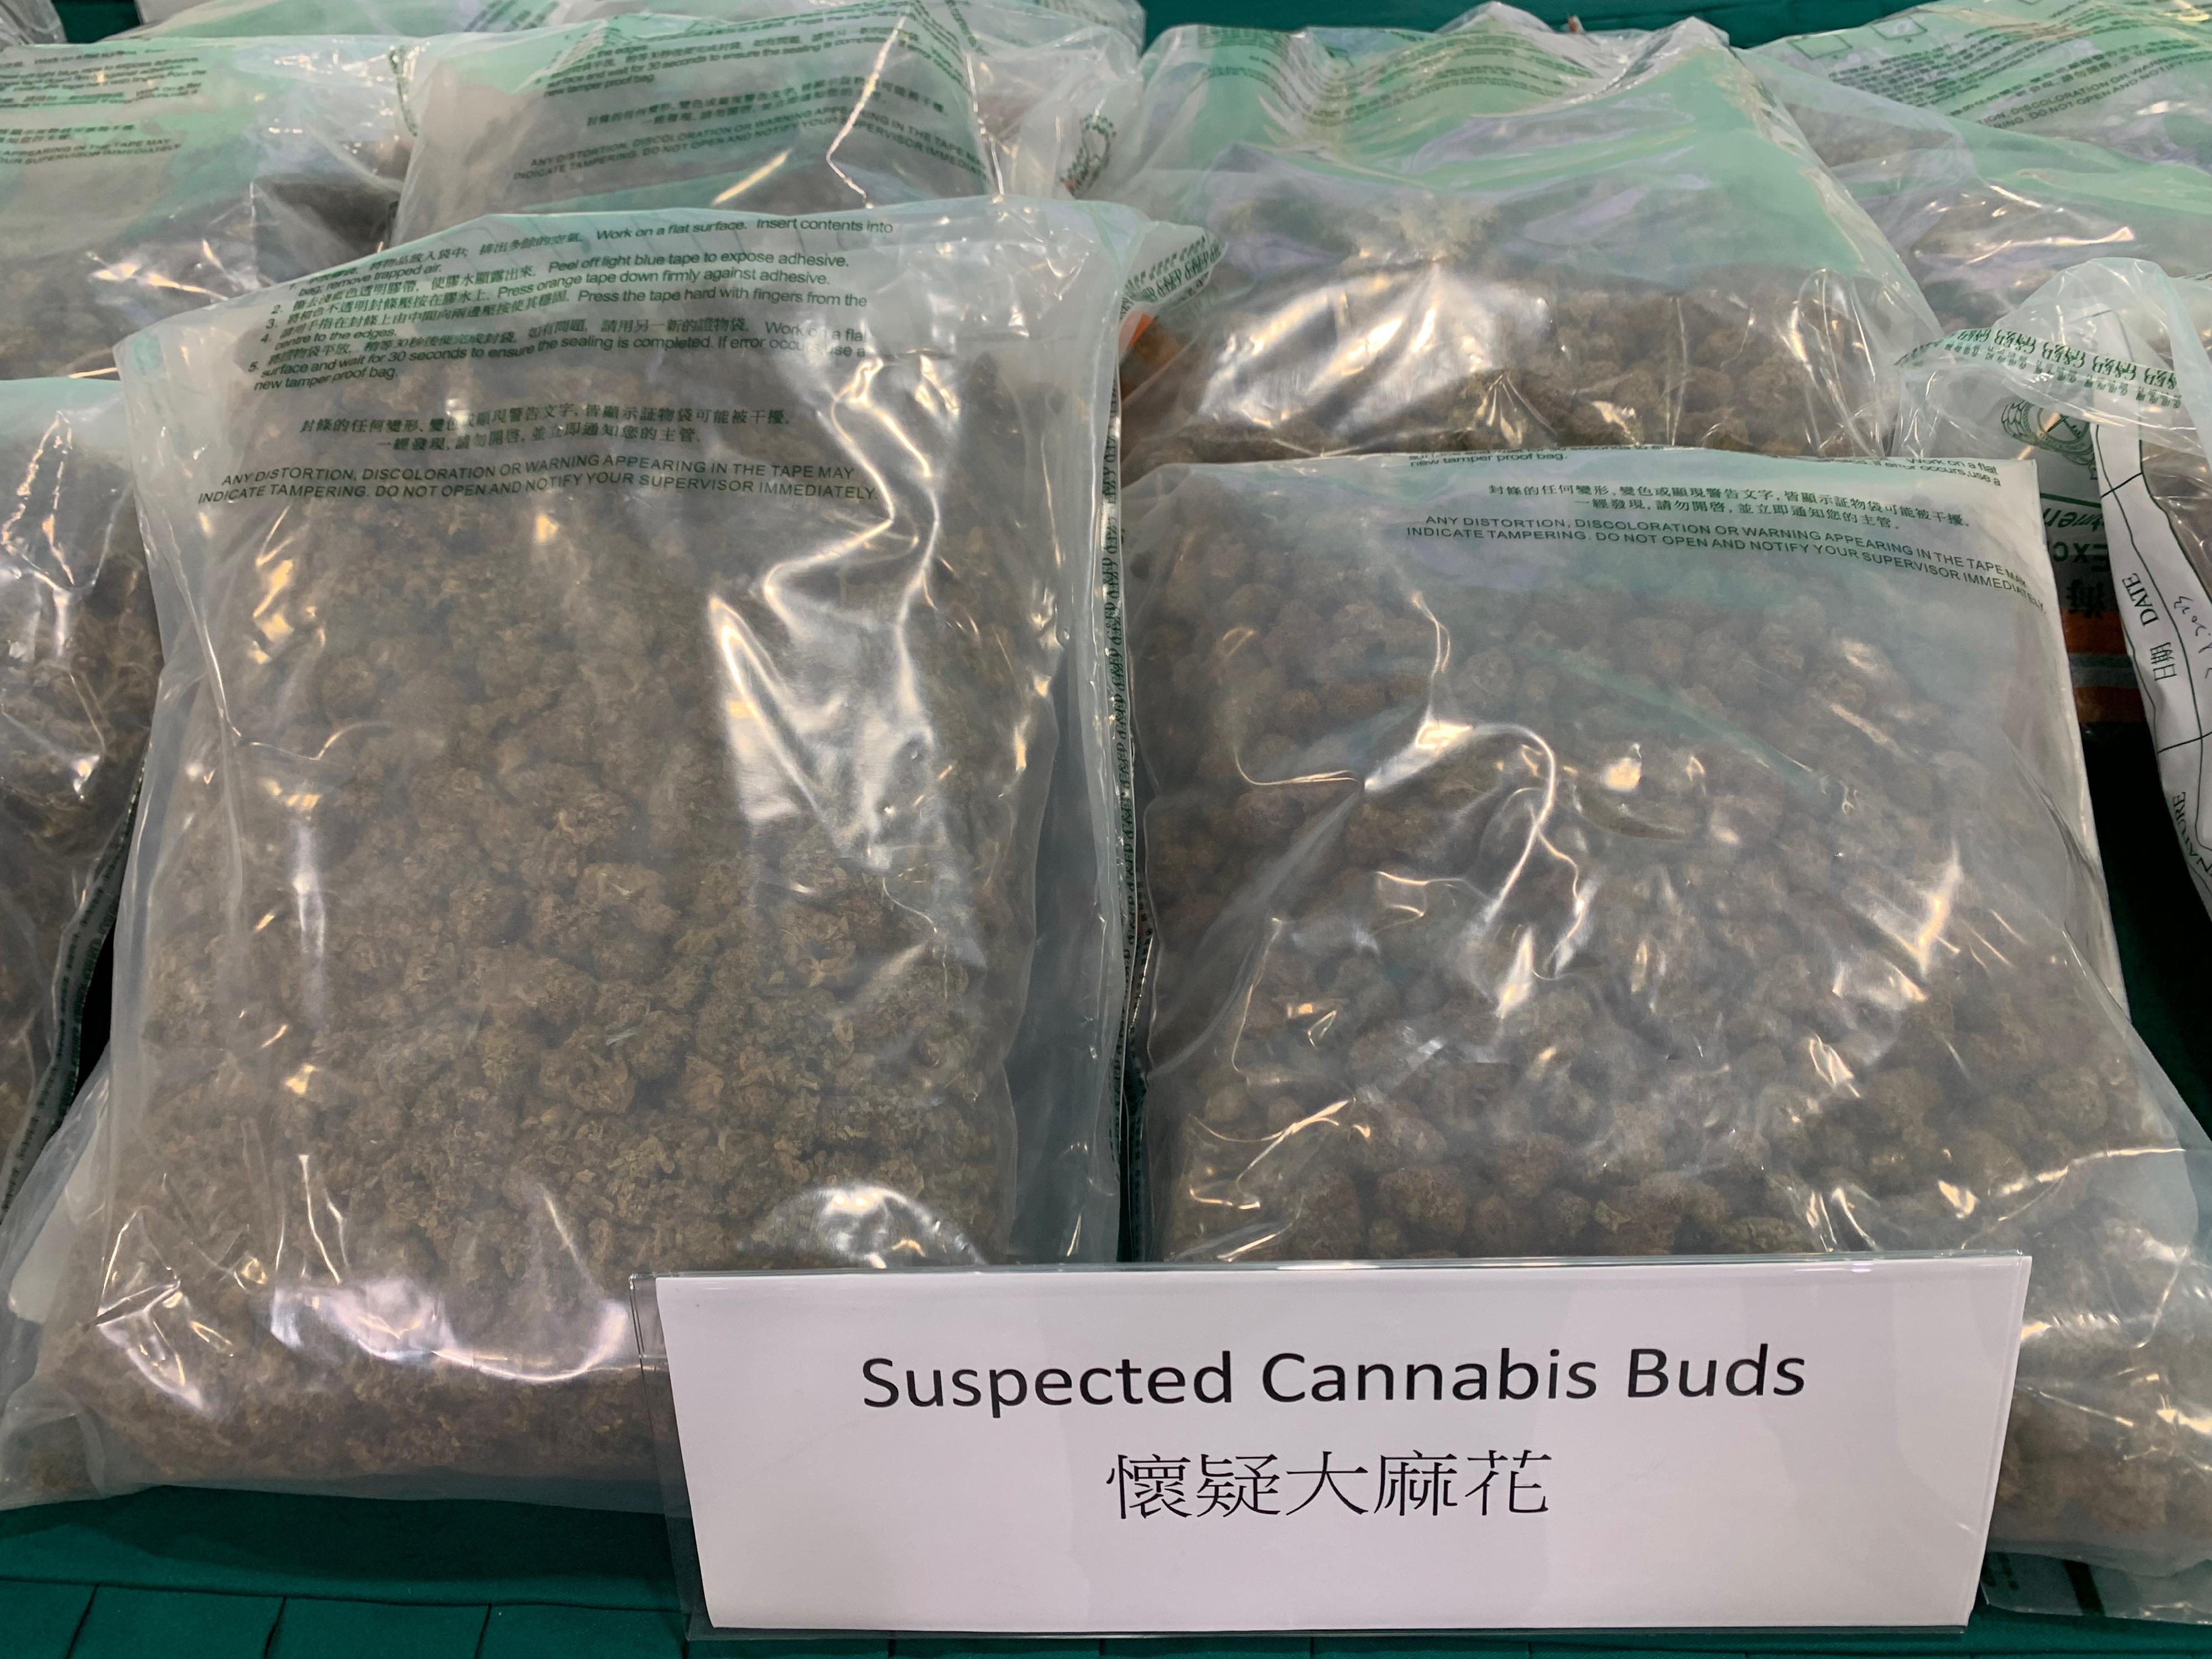 香港海關於六月十二日至八月十一日採取代號「狙擊者」的反毒品行動，打擊利用集運方式販運毒品。圖示行動中檢獲的部分懷疑大麻花。